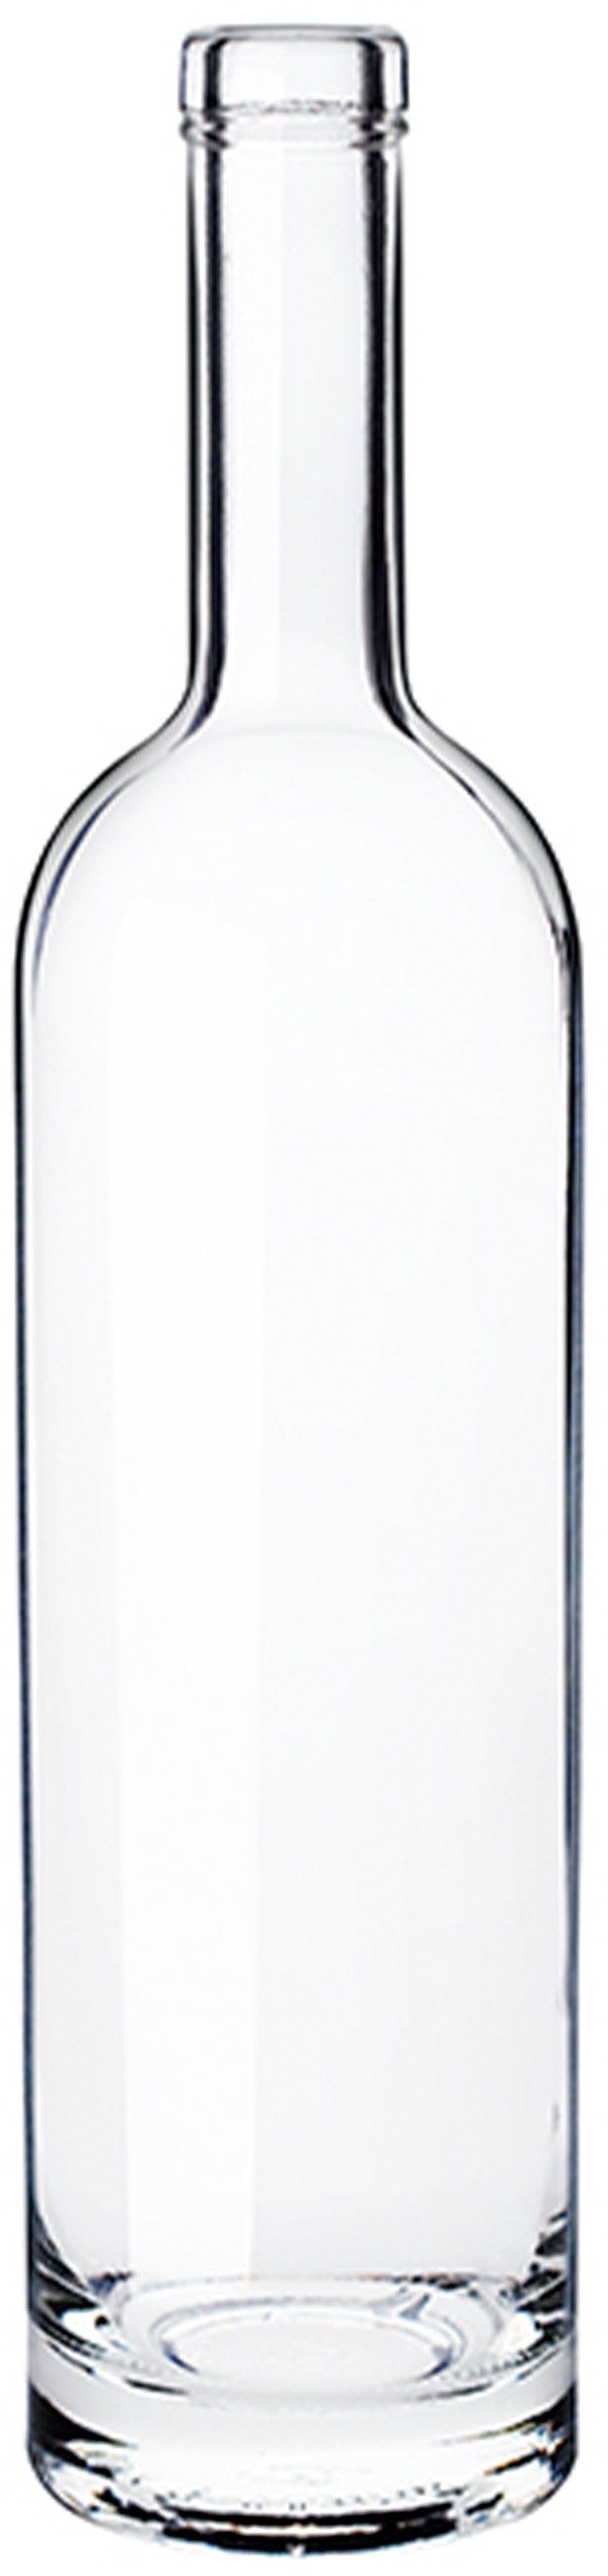 Flasche SERENADE  750 ml BG-Korken